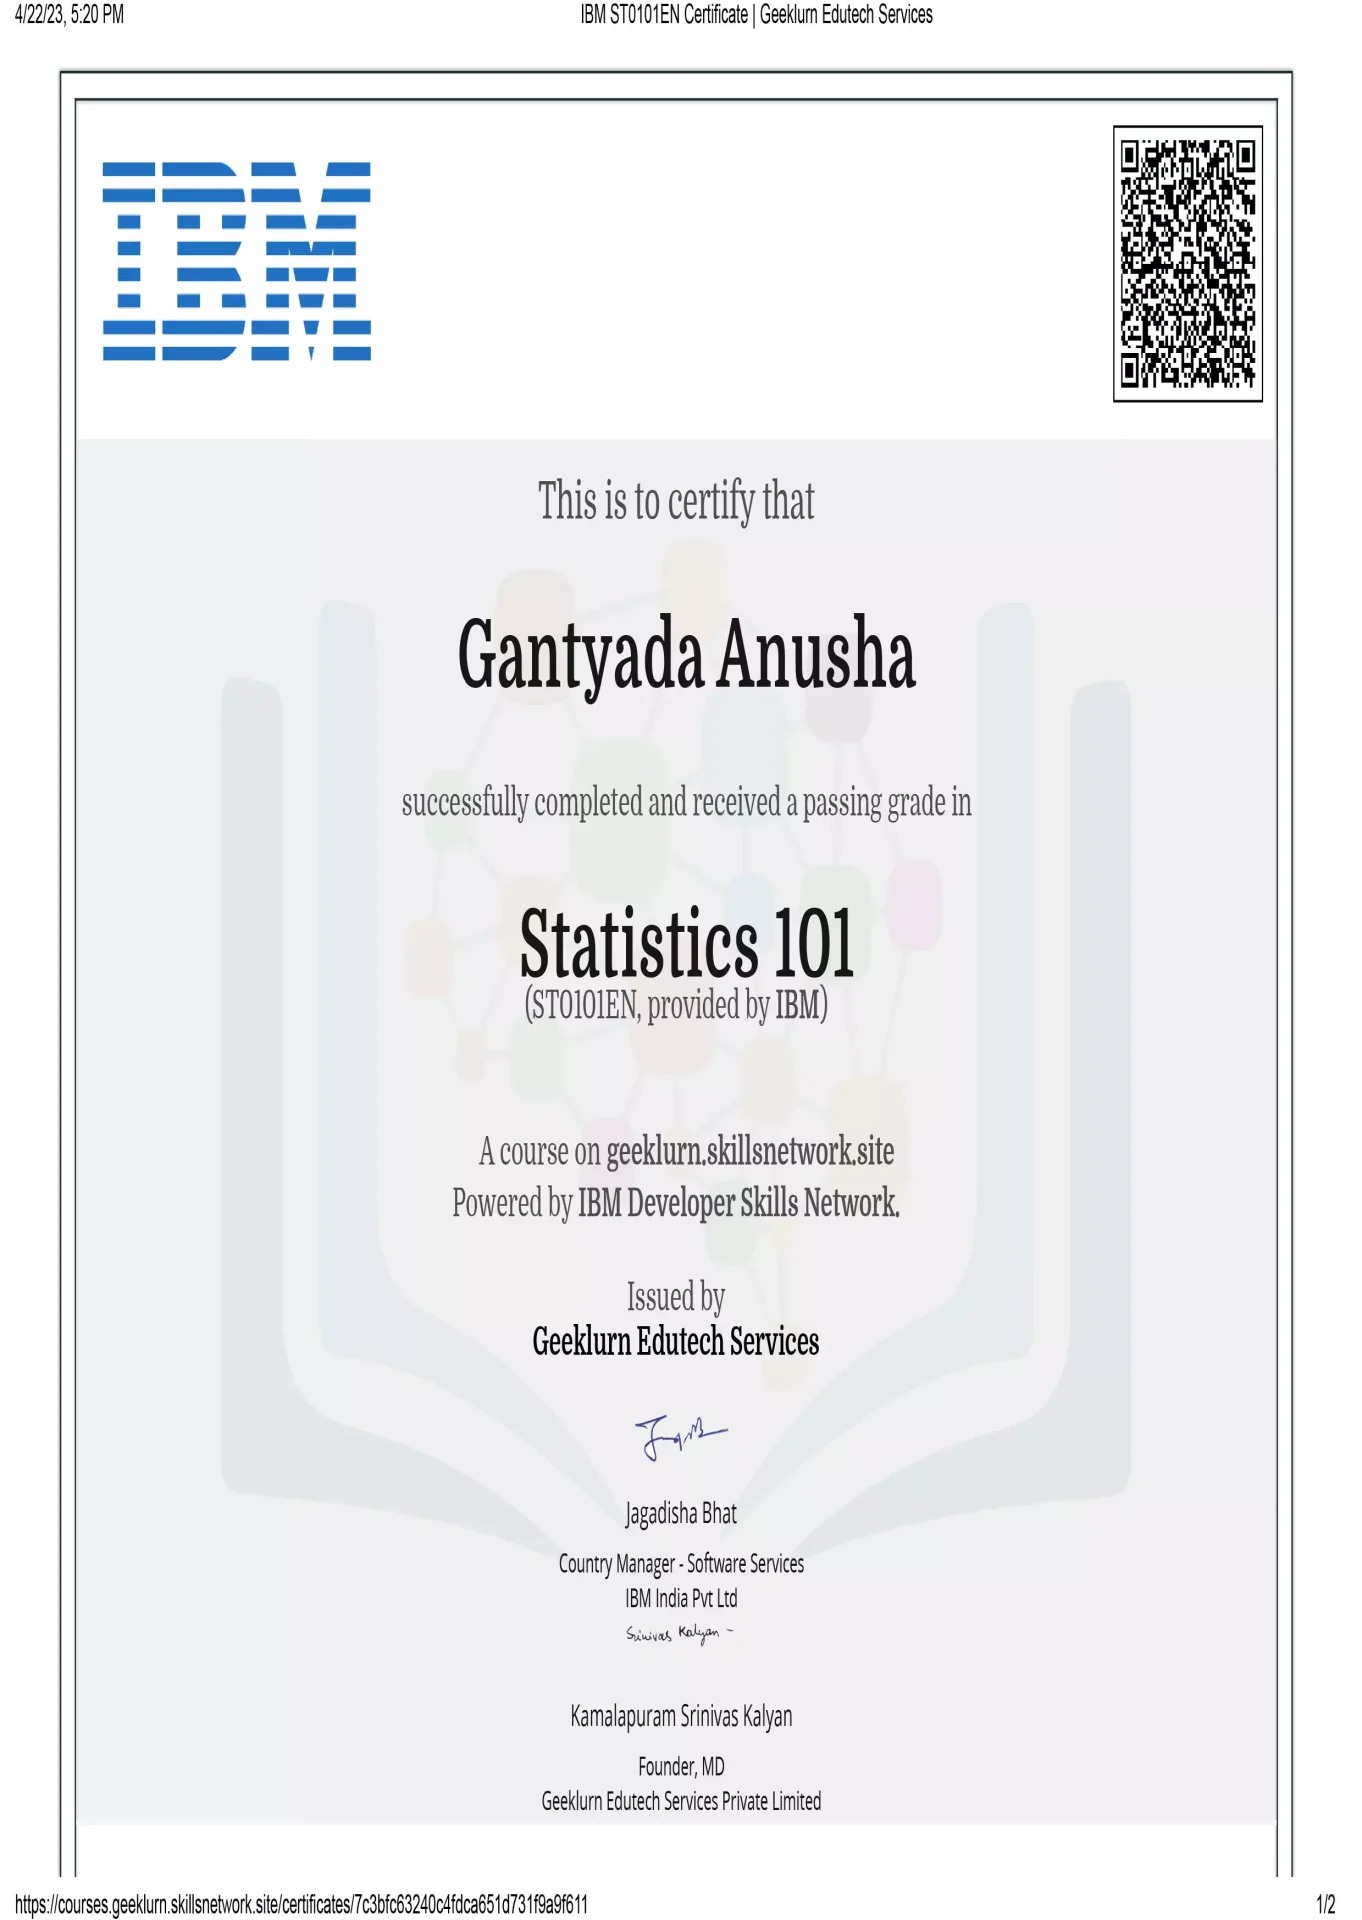 ibm-st0101en-certificate-geeklurn-edutech-services-13